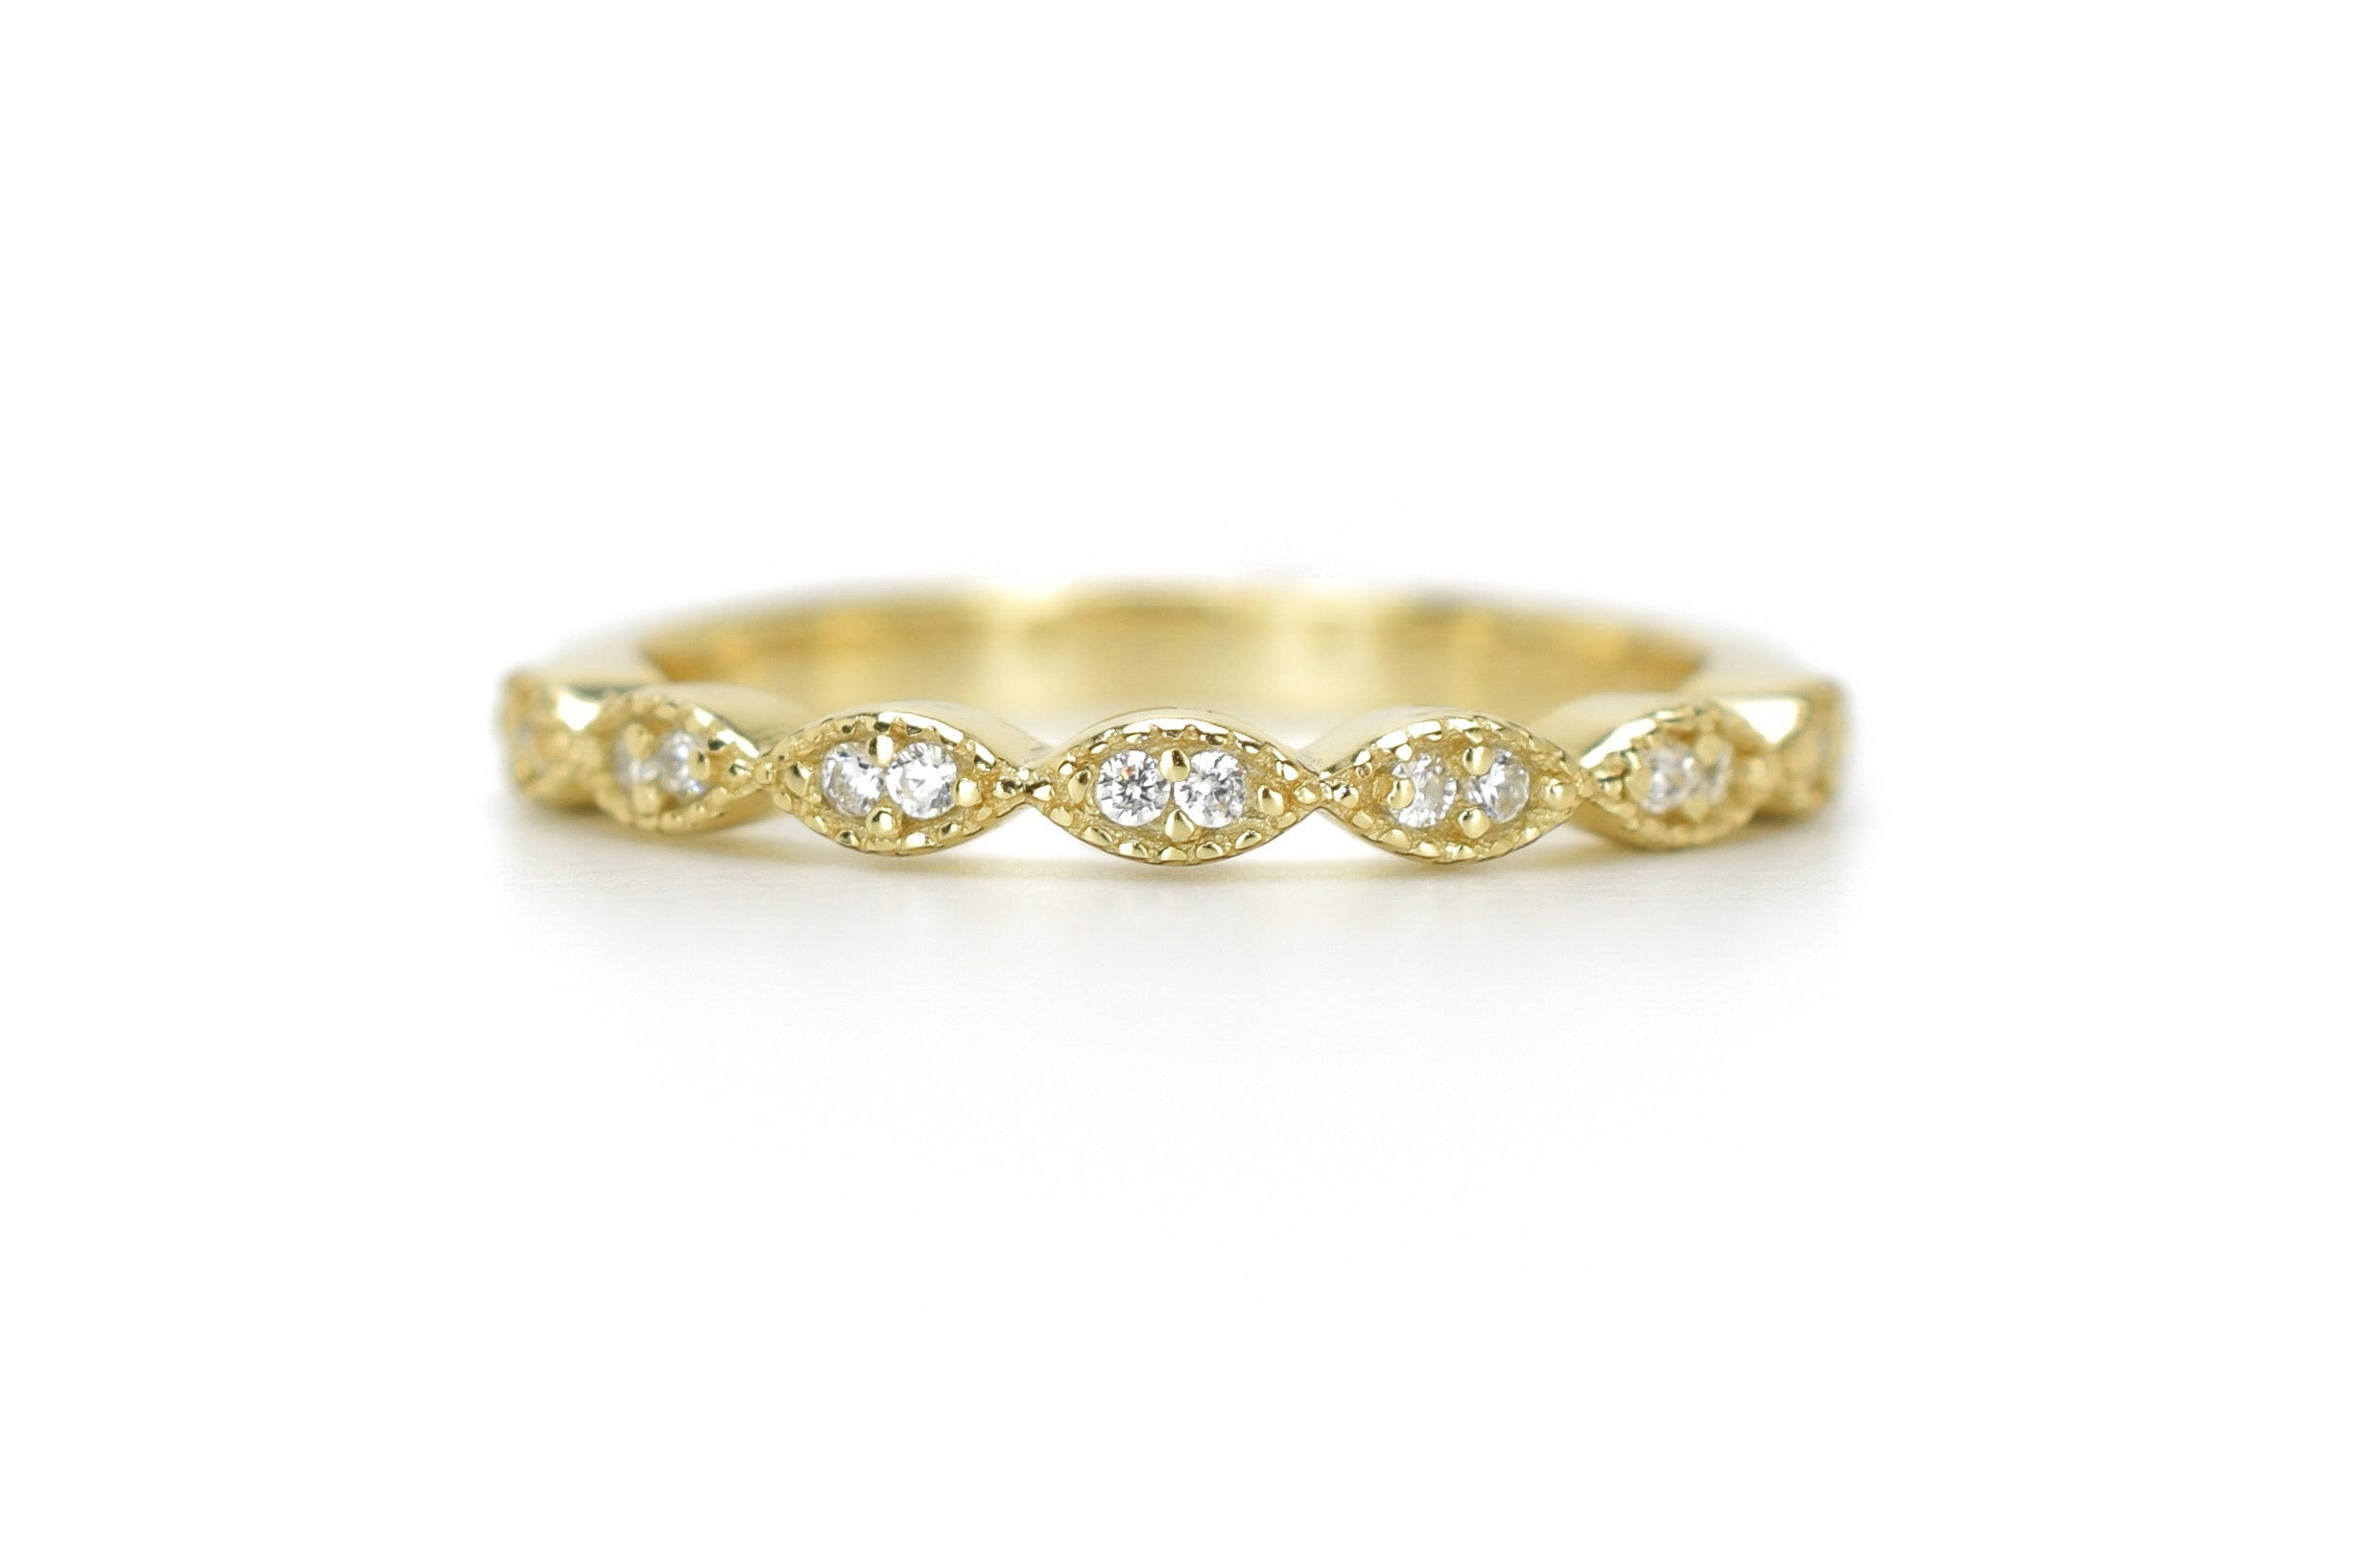 18k gouden aanschuifring, vintage ring goud, 18k verlovingsring, trouwring voor haar, aanschuifring vintage 